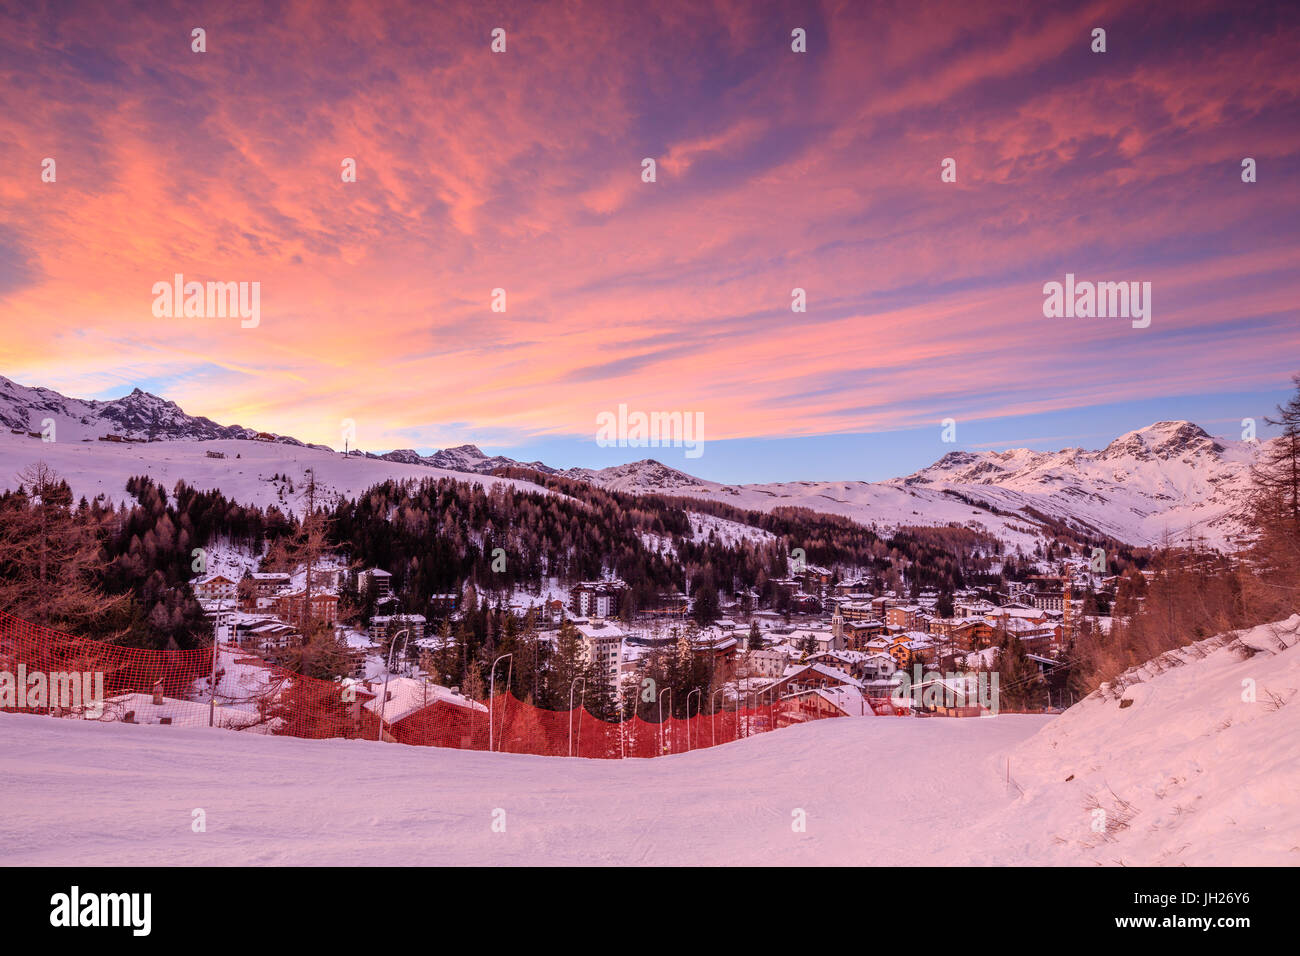 Rosa Wolken bei Sonnenuntergang auf der alpinen Dorf Madesimo und verschneite Ski Pisten, Spluga Tal, Valtellina, Lombardei, Italien Stockfoto